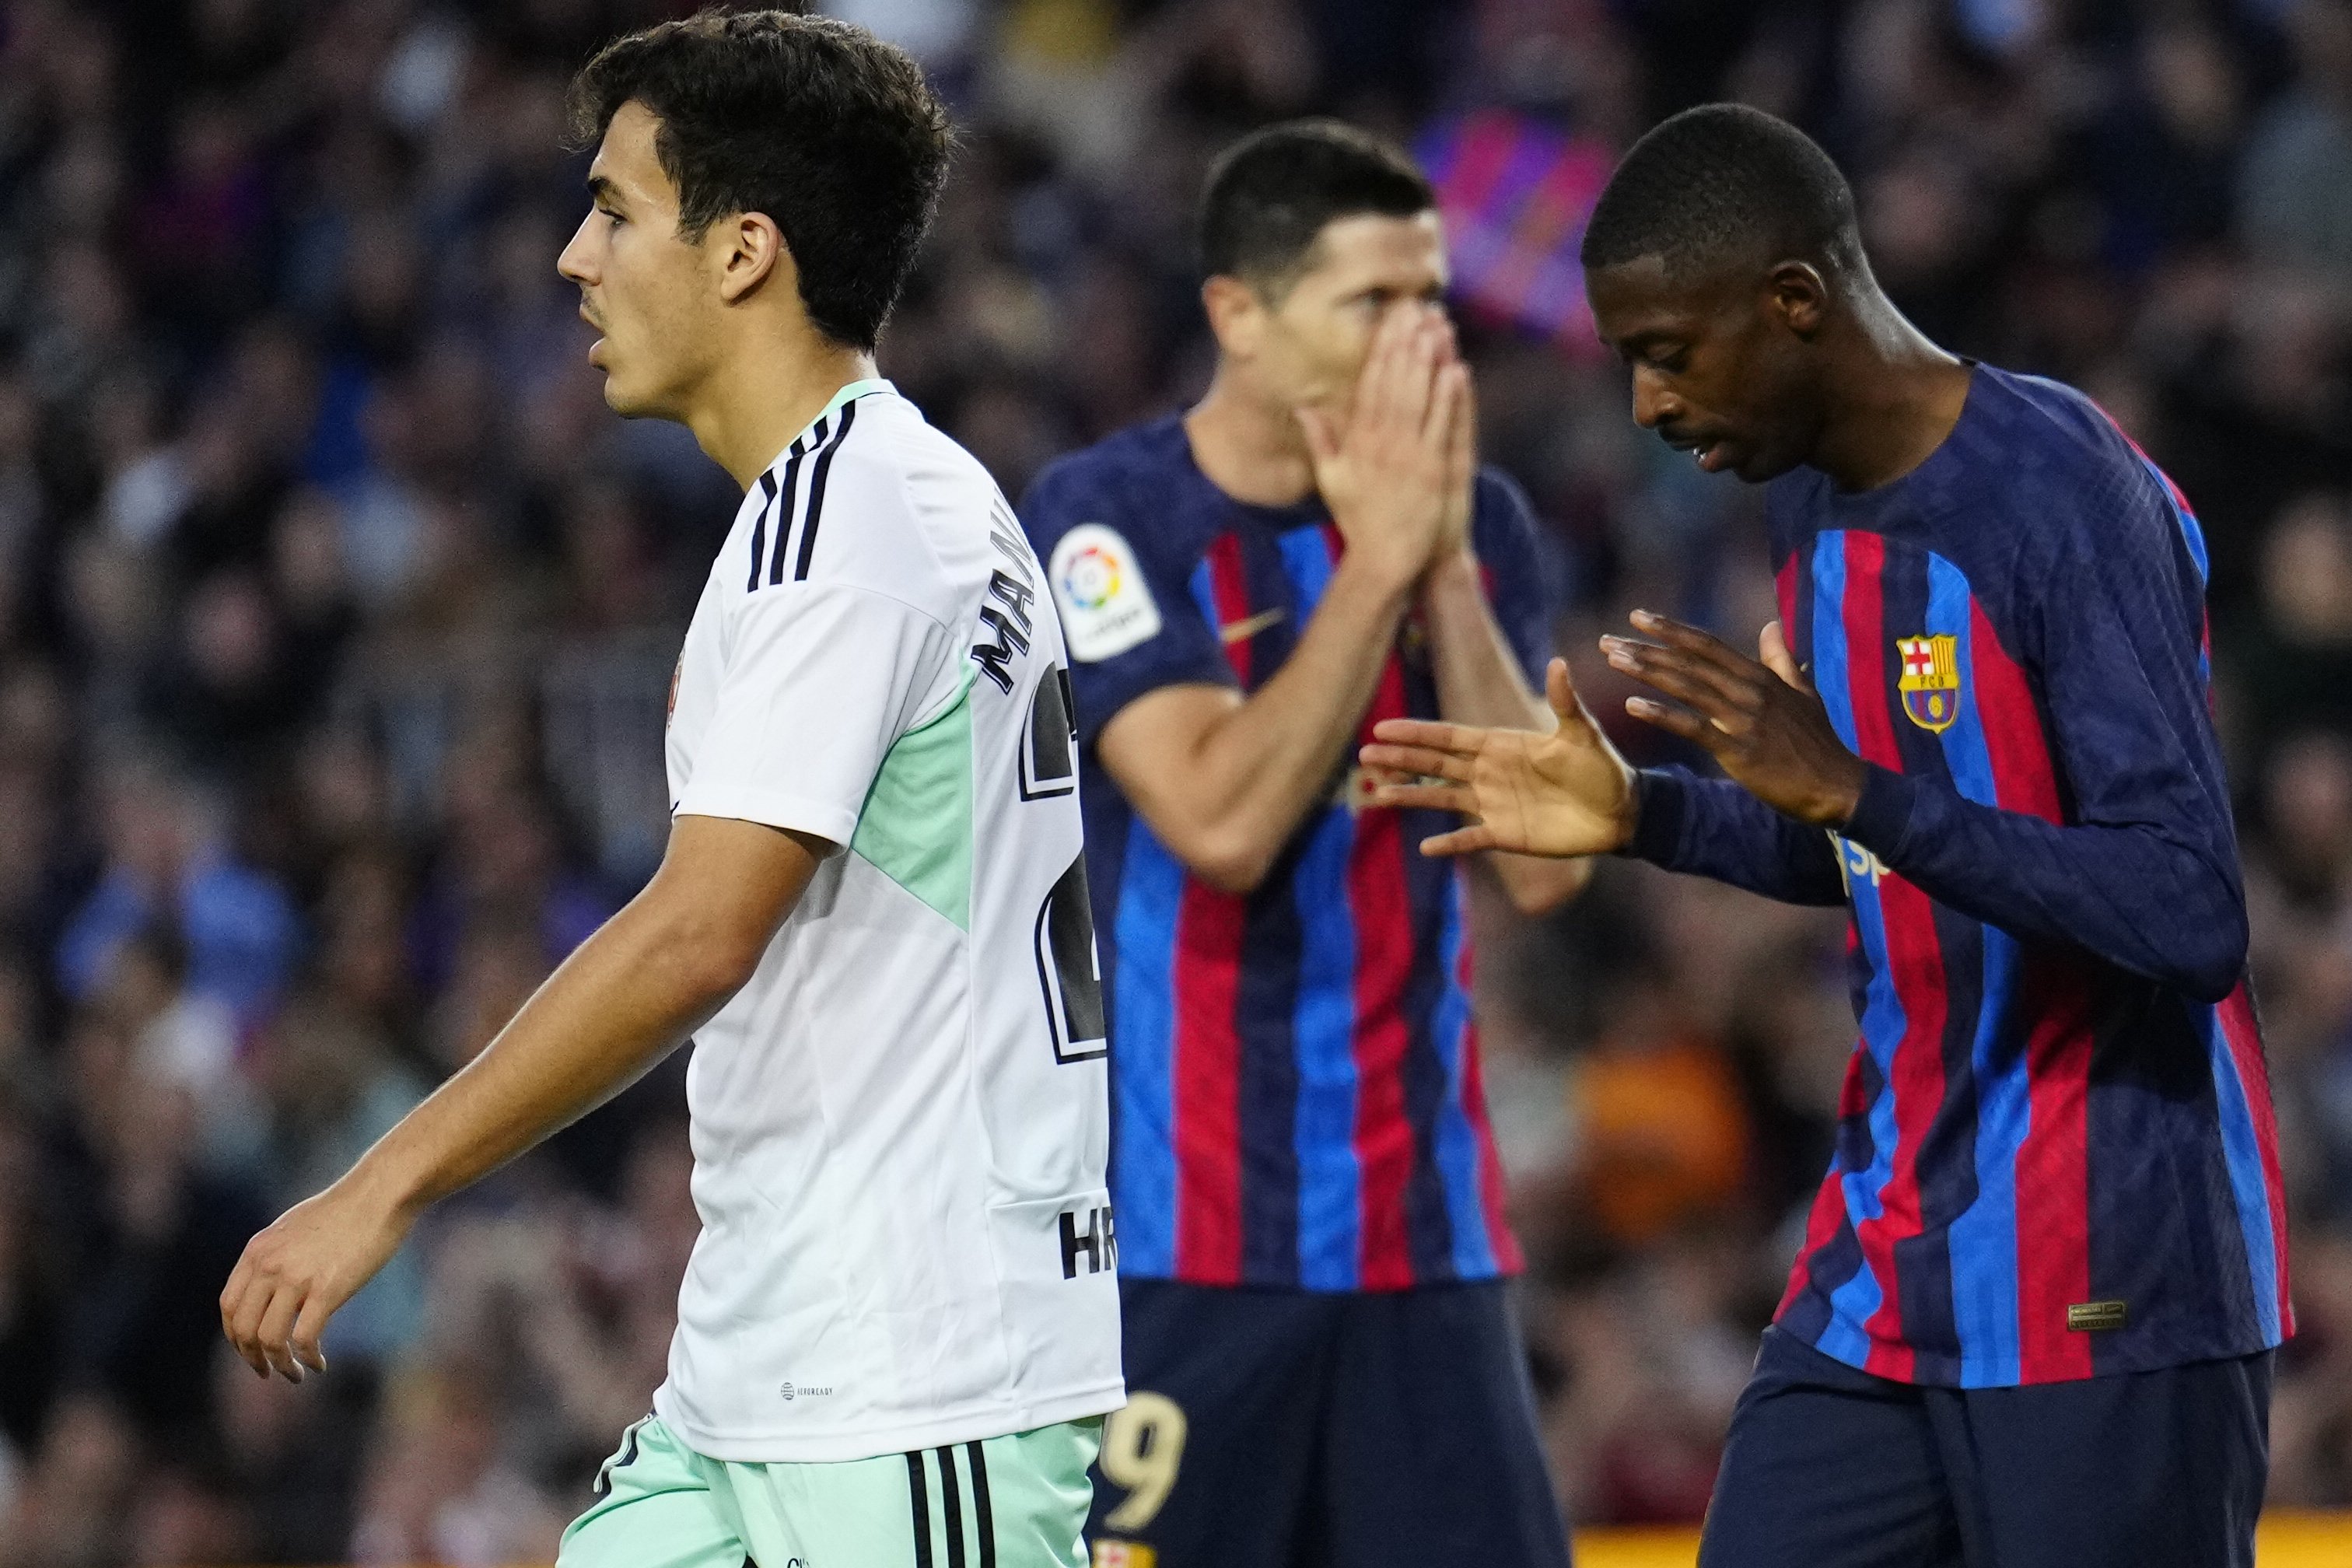 El gran rival de Dembélé está cerrado, primer fichaje del nuevo Barça, Xavi Hernández ha dicho “sí”